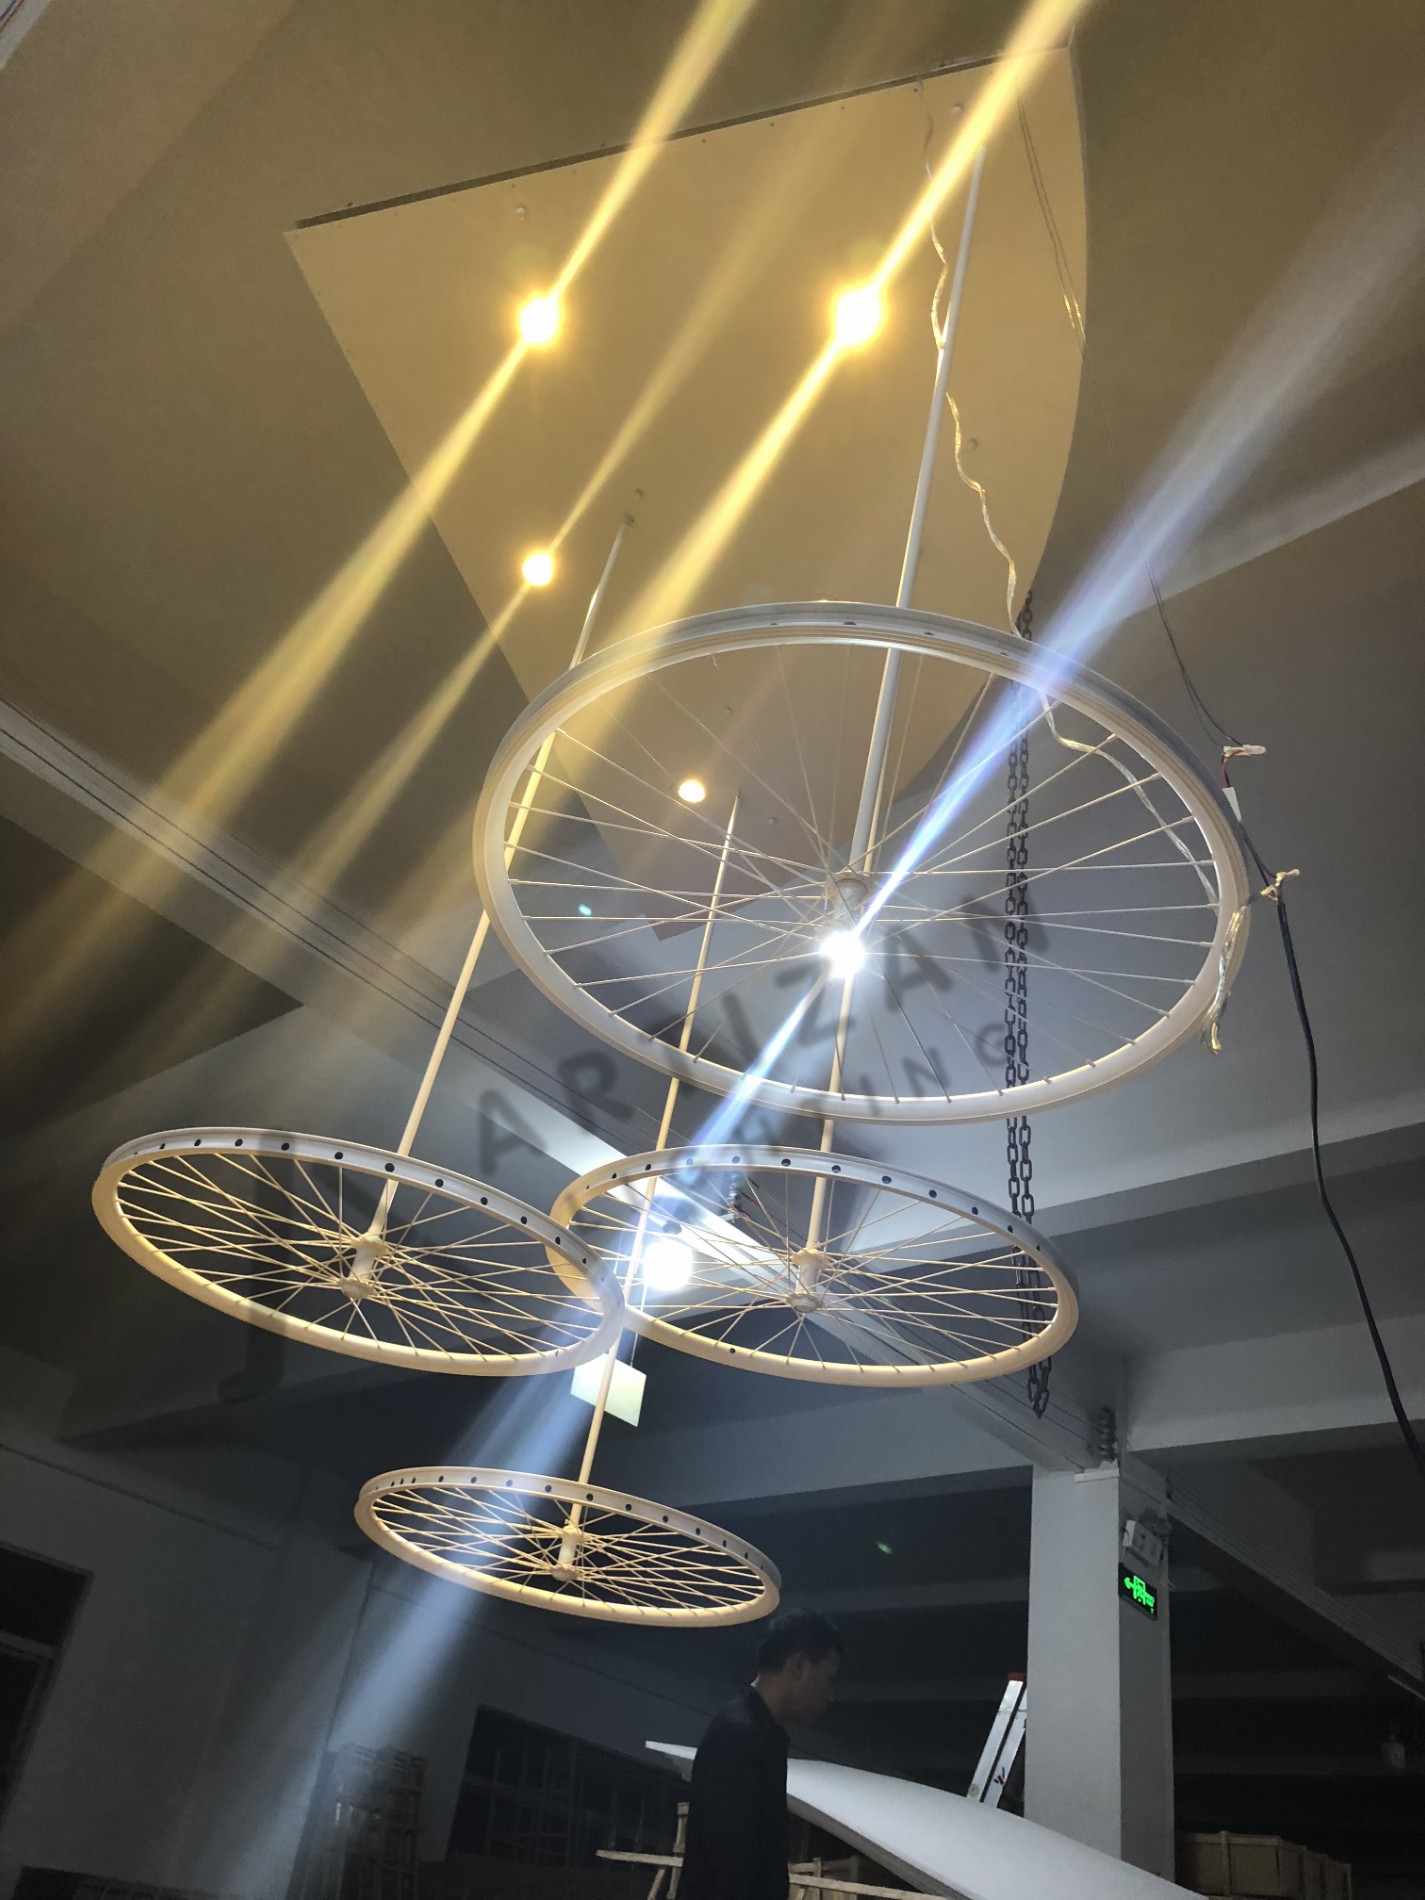 Wheel custom chandelier modern design decorative lighting fixtures